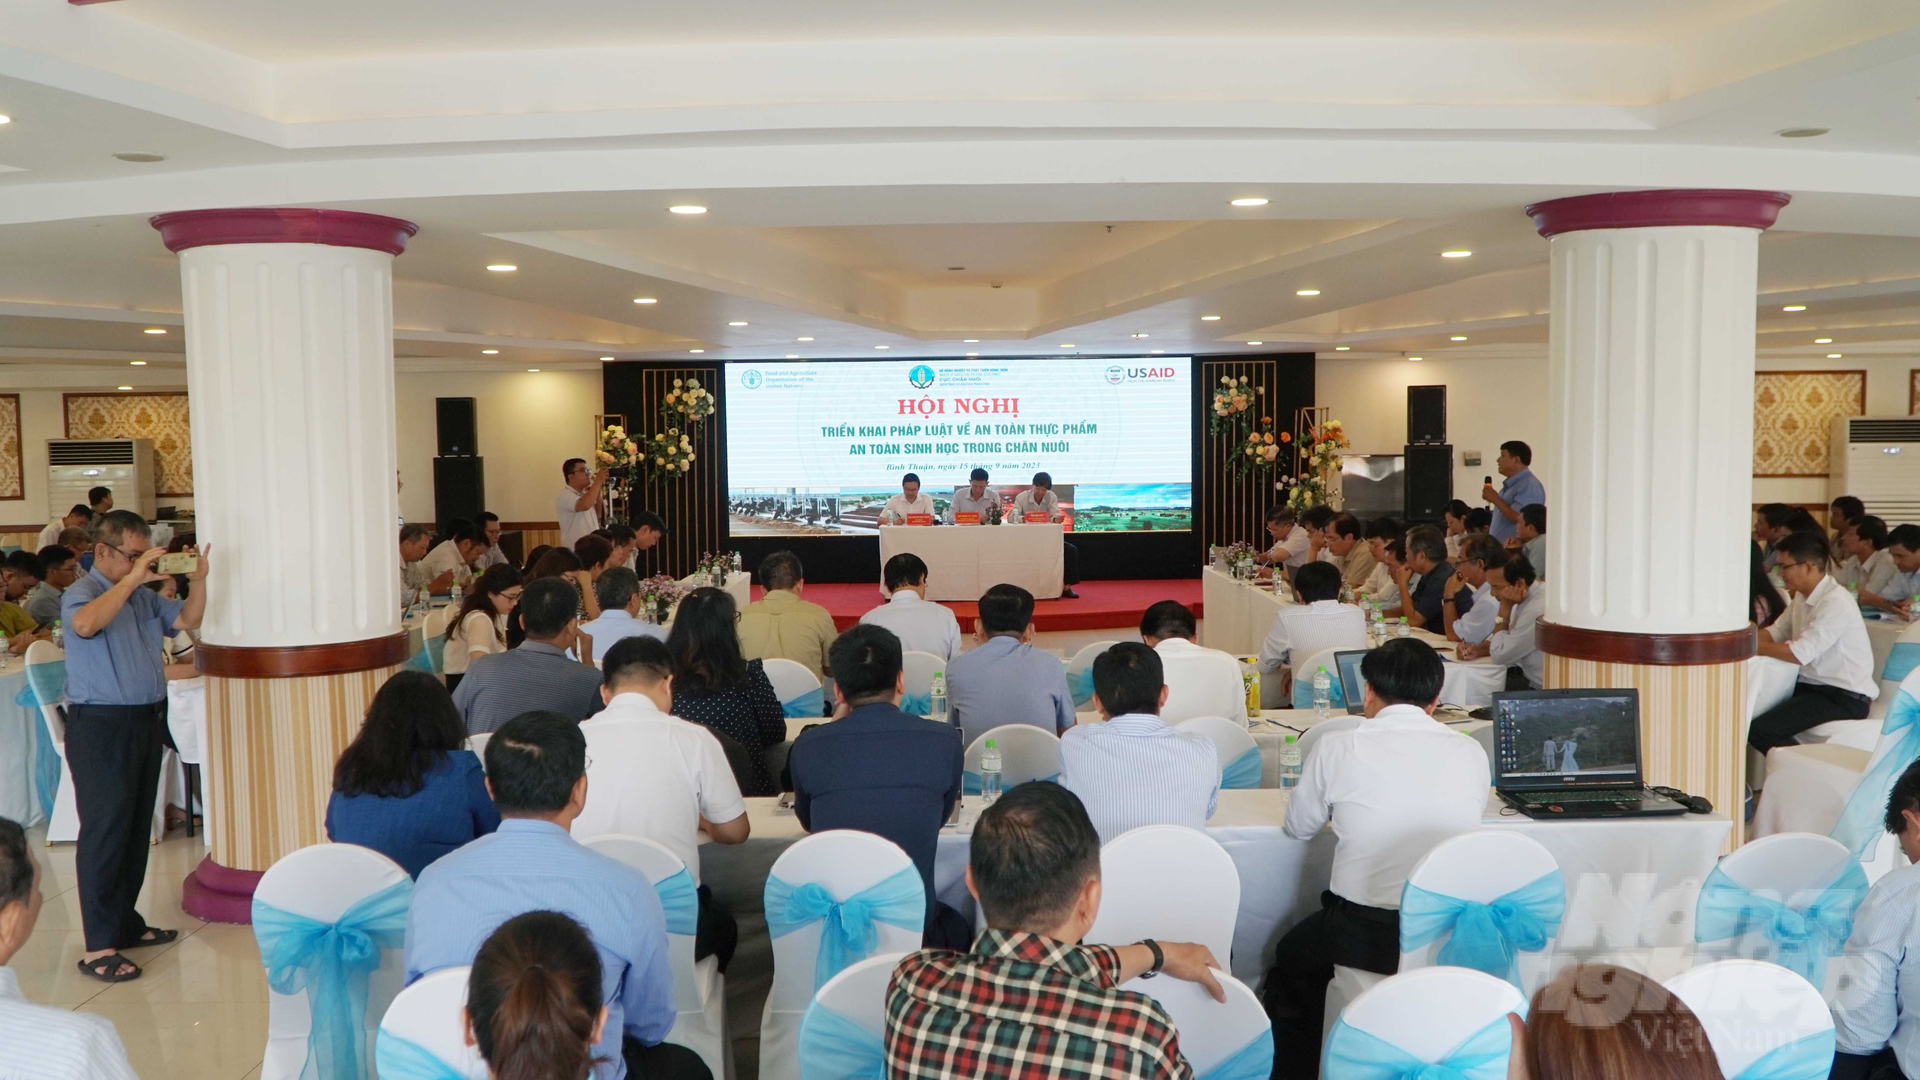 Hội nghị có sự tham dự của đại diện 32 tỉnh thành phía Nam. Ảnh: Lê Bình.